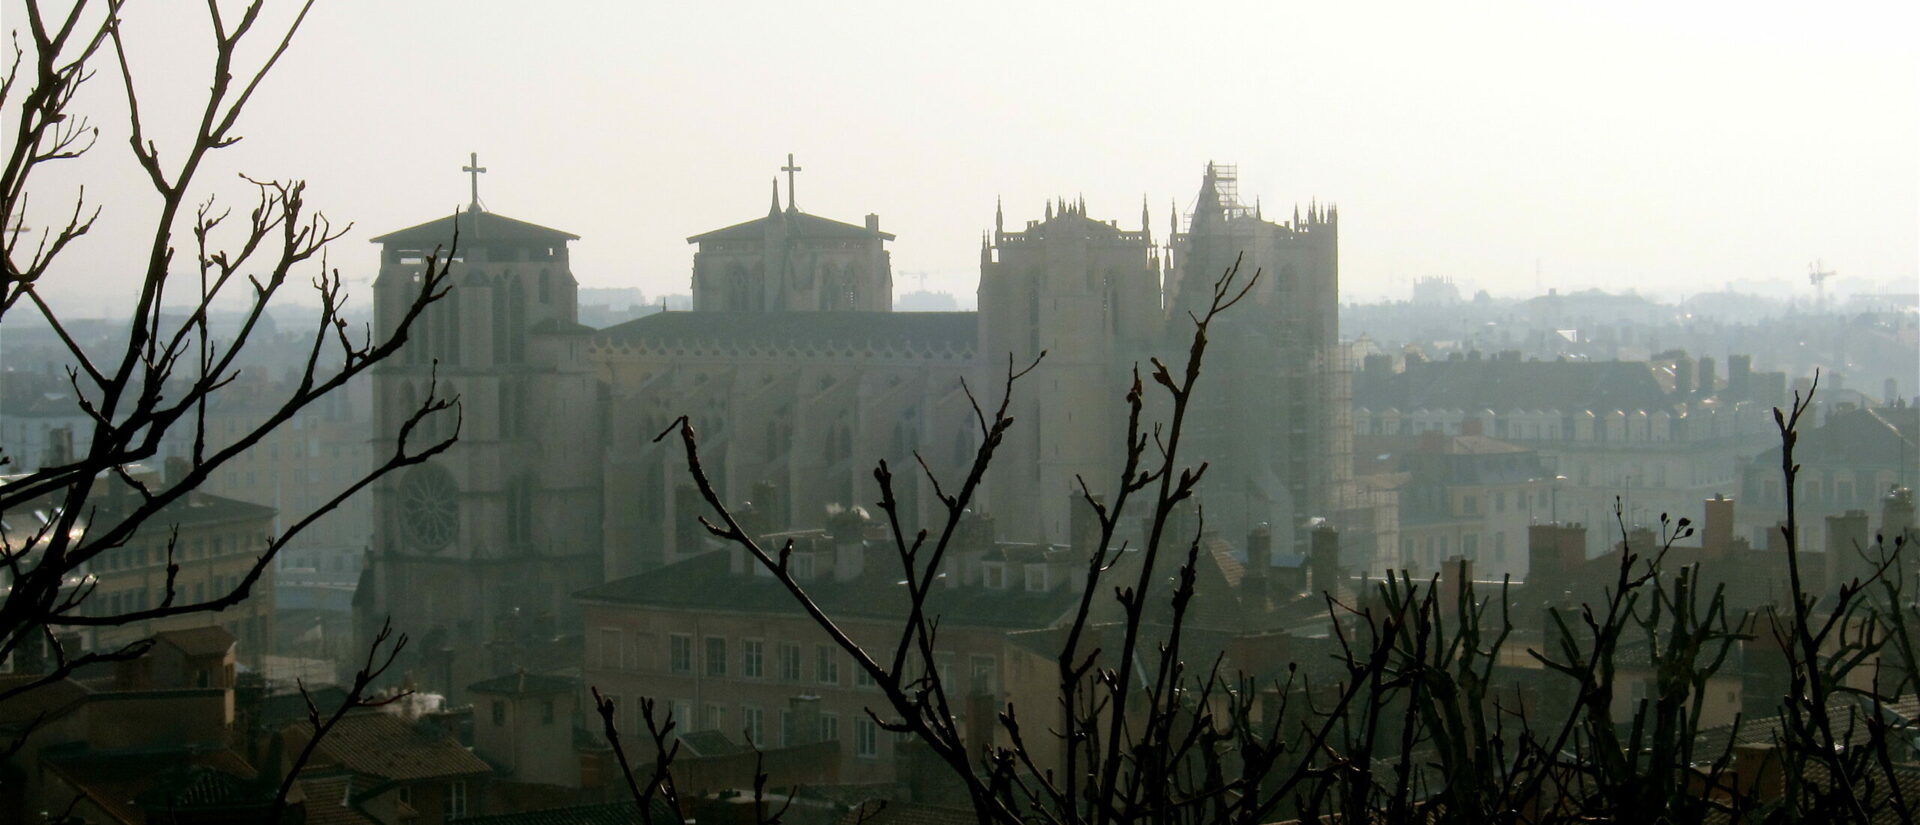 L'archidiocèse de Lyon est encore dans le brouillard concernant son prochain évêque | photo: la cathédrale St-Jean de Lyon: © Enrique Dans/Flickr/CC BY 2.0